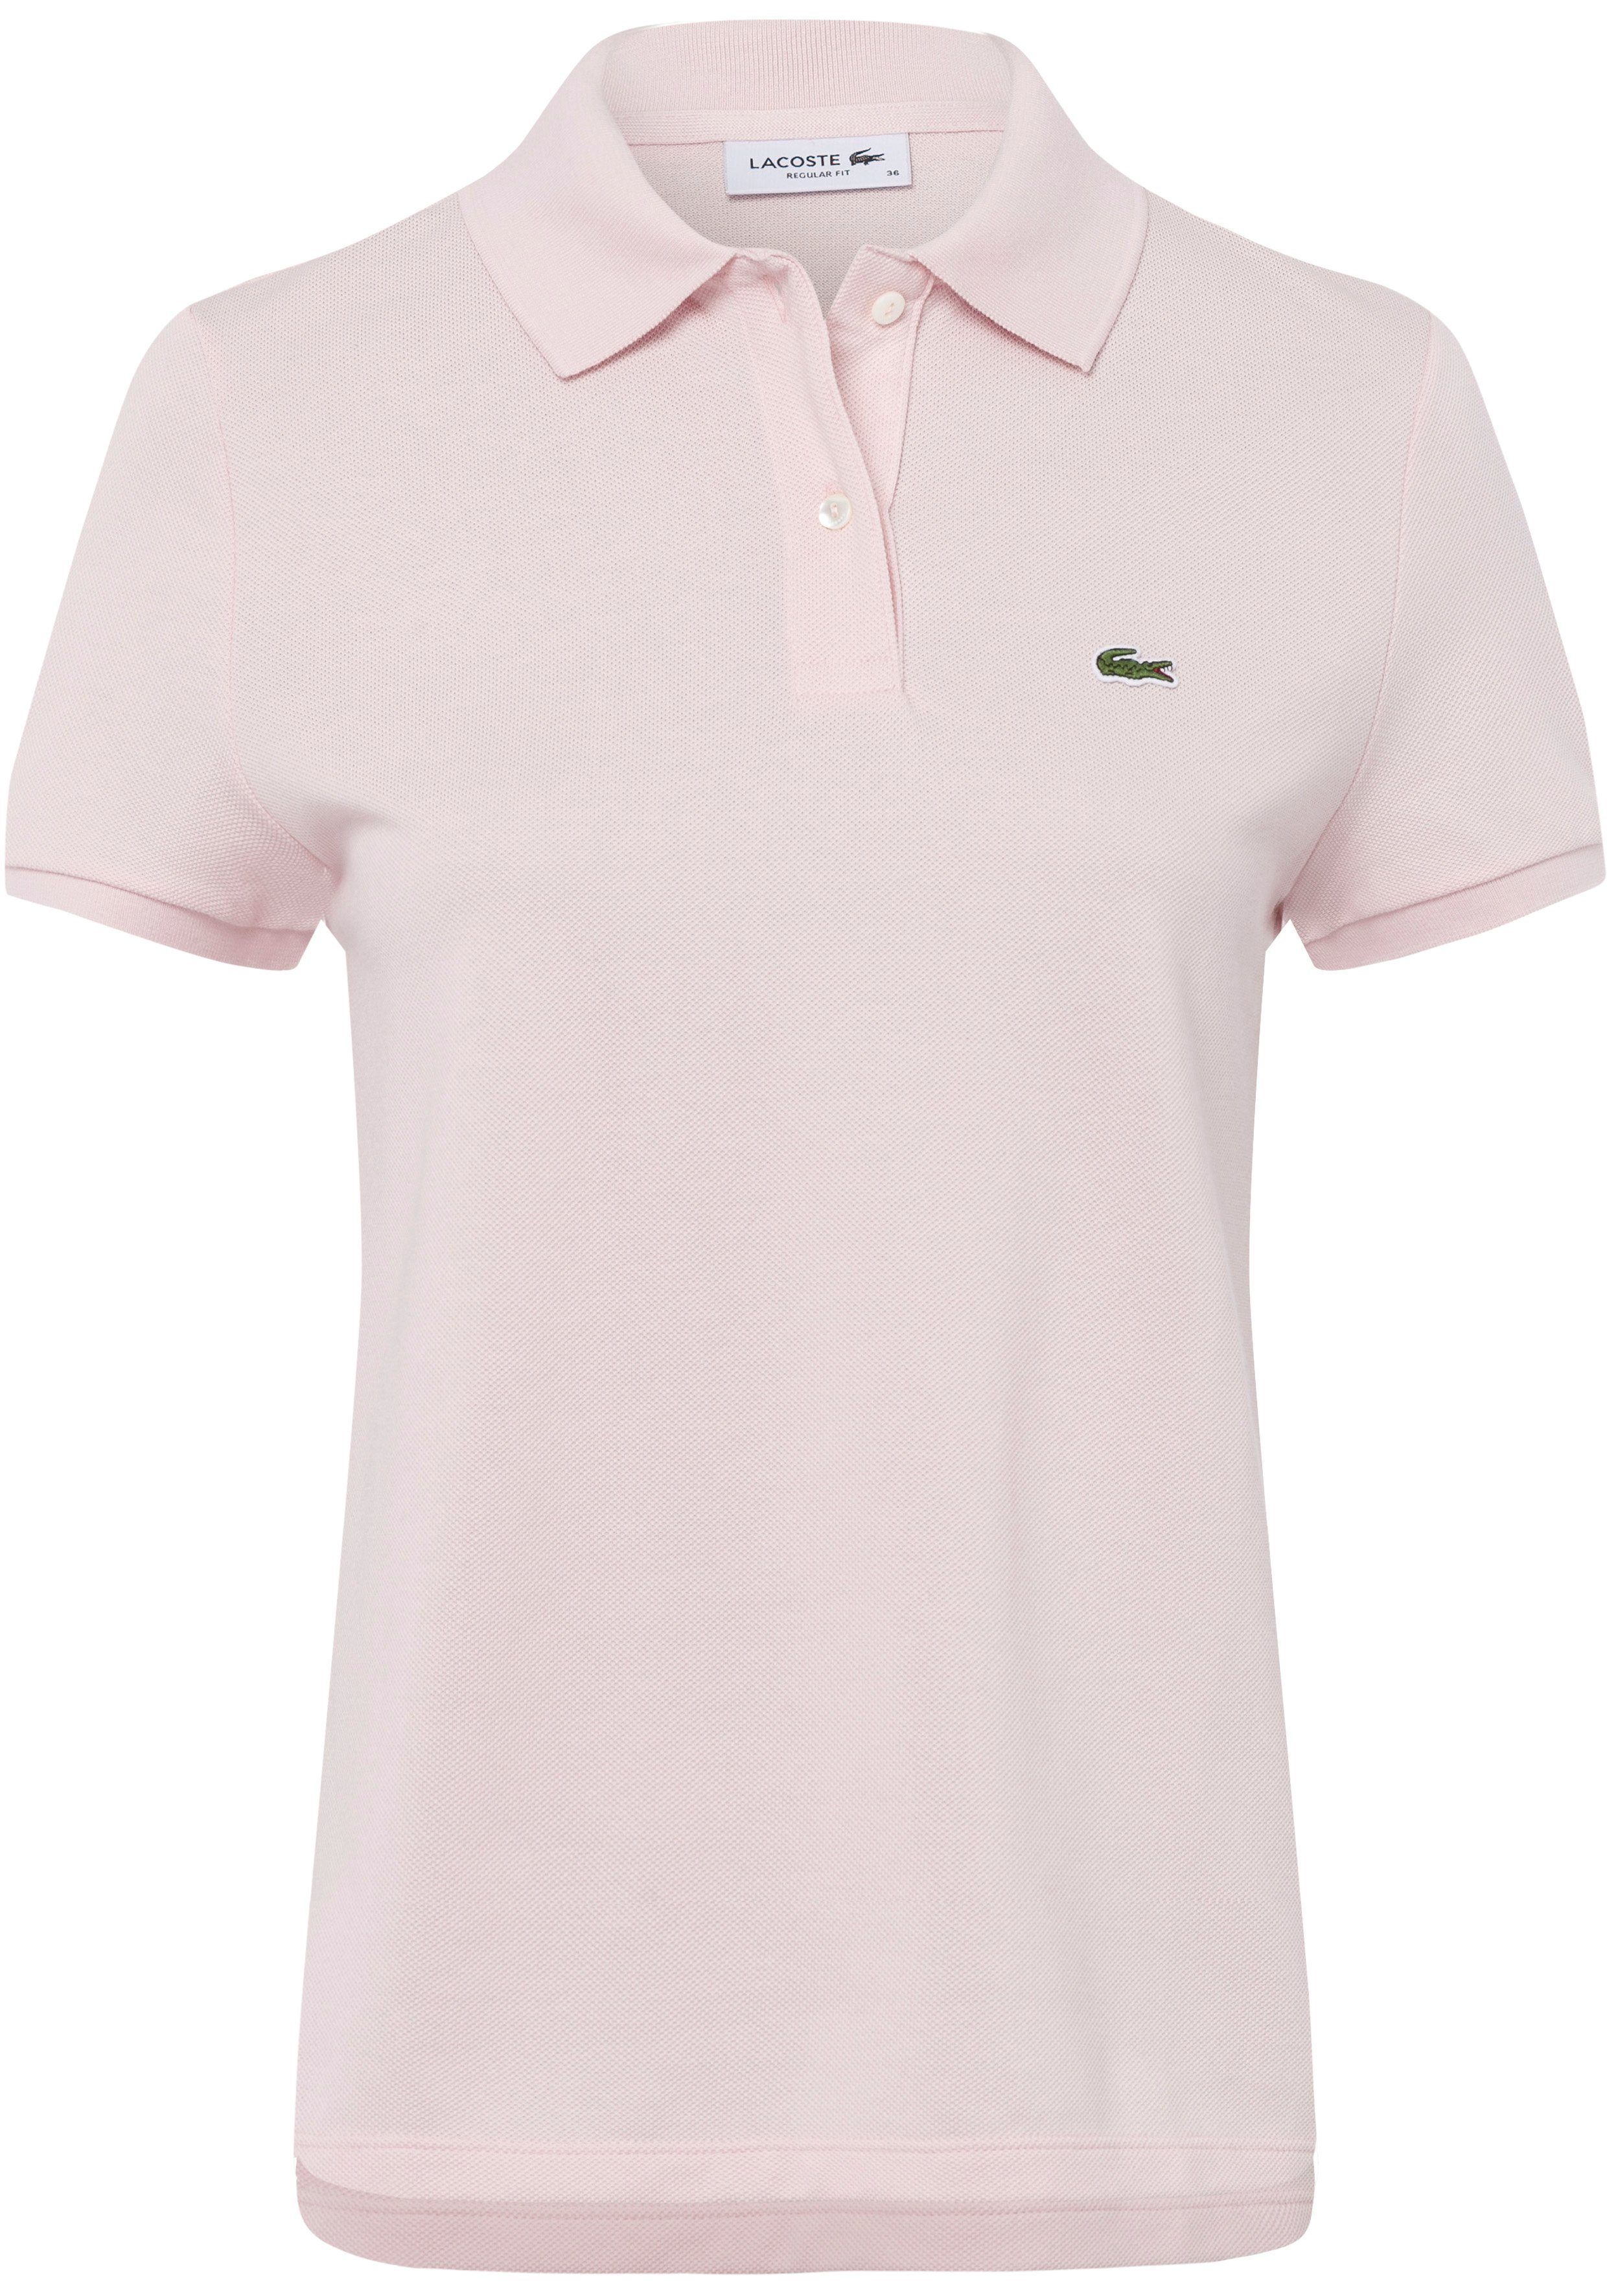 Lacoste Poloshirt mit auf Lacoste-Logo-Patch rosa der Brust